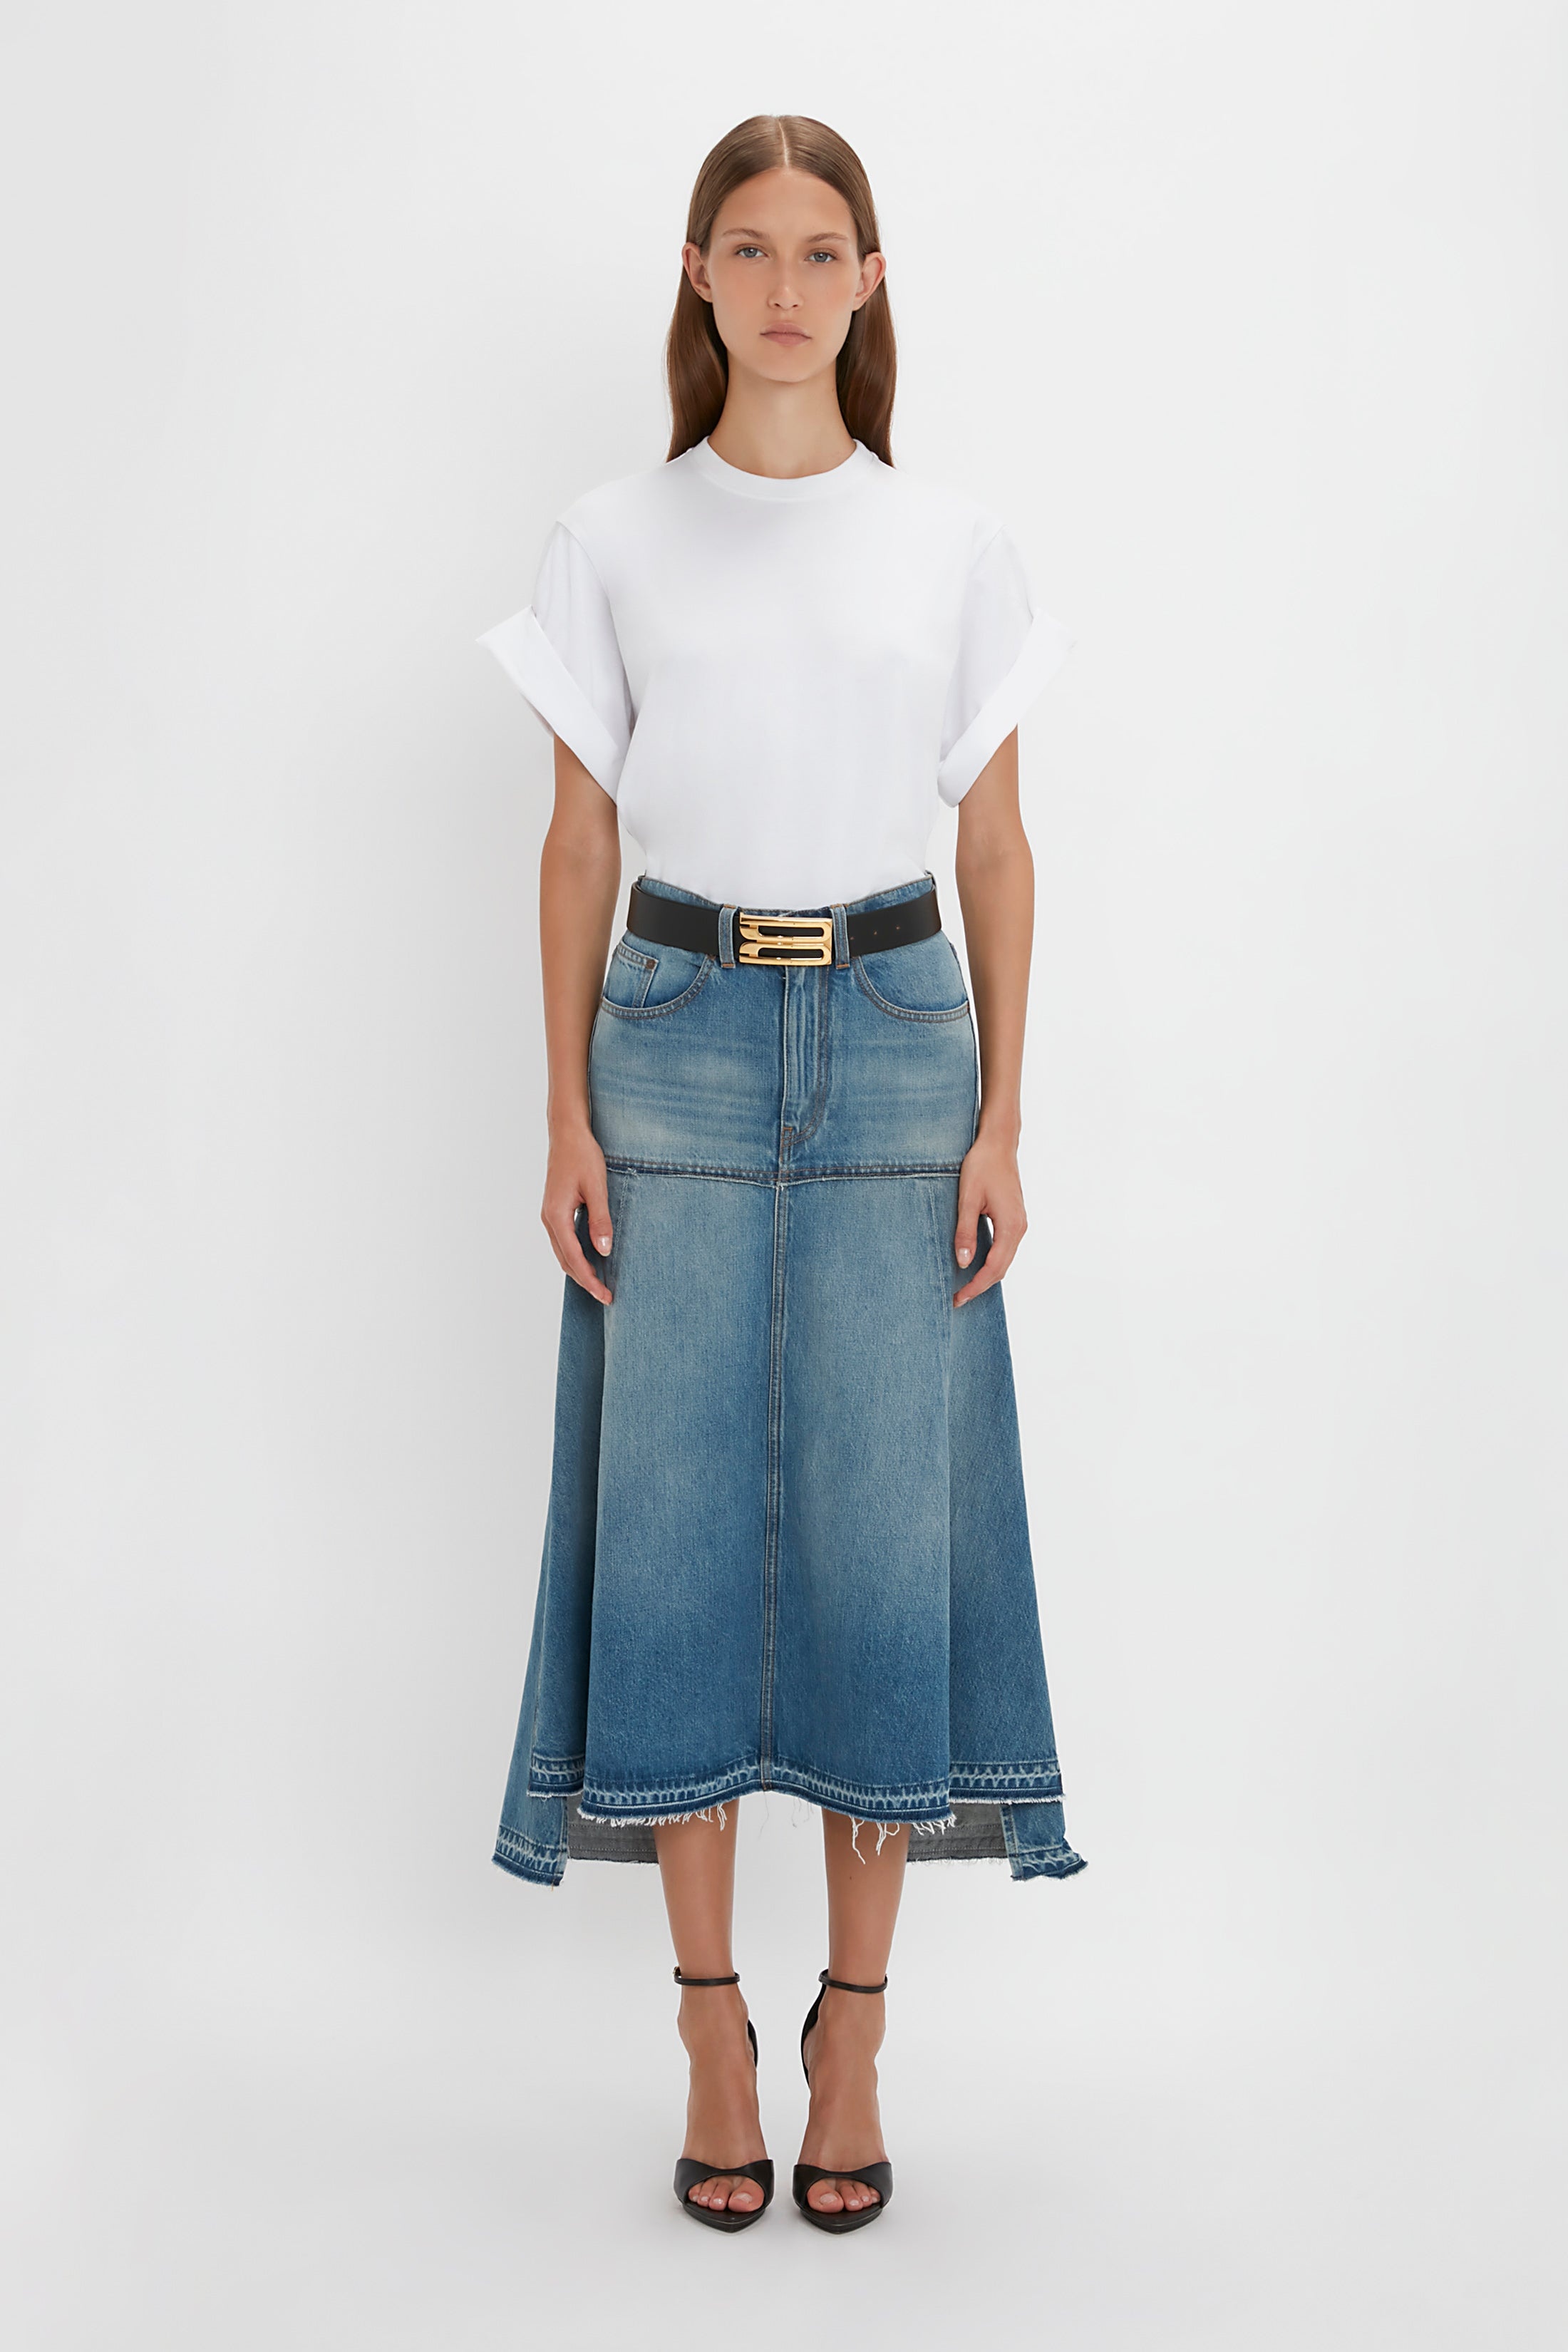 Patched Denim Skirt In Vintage Wash - 2